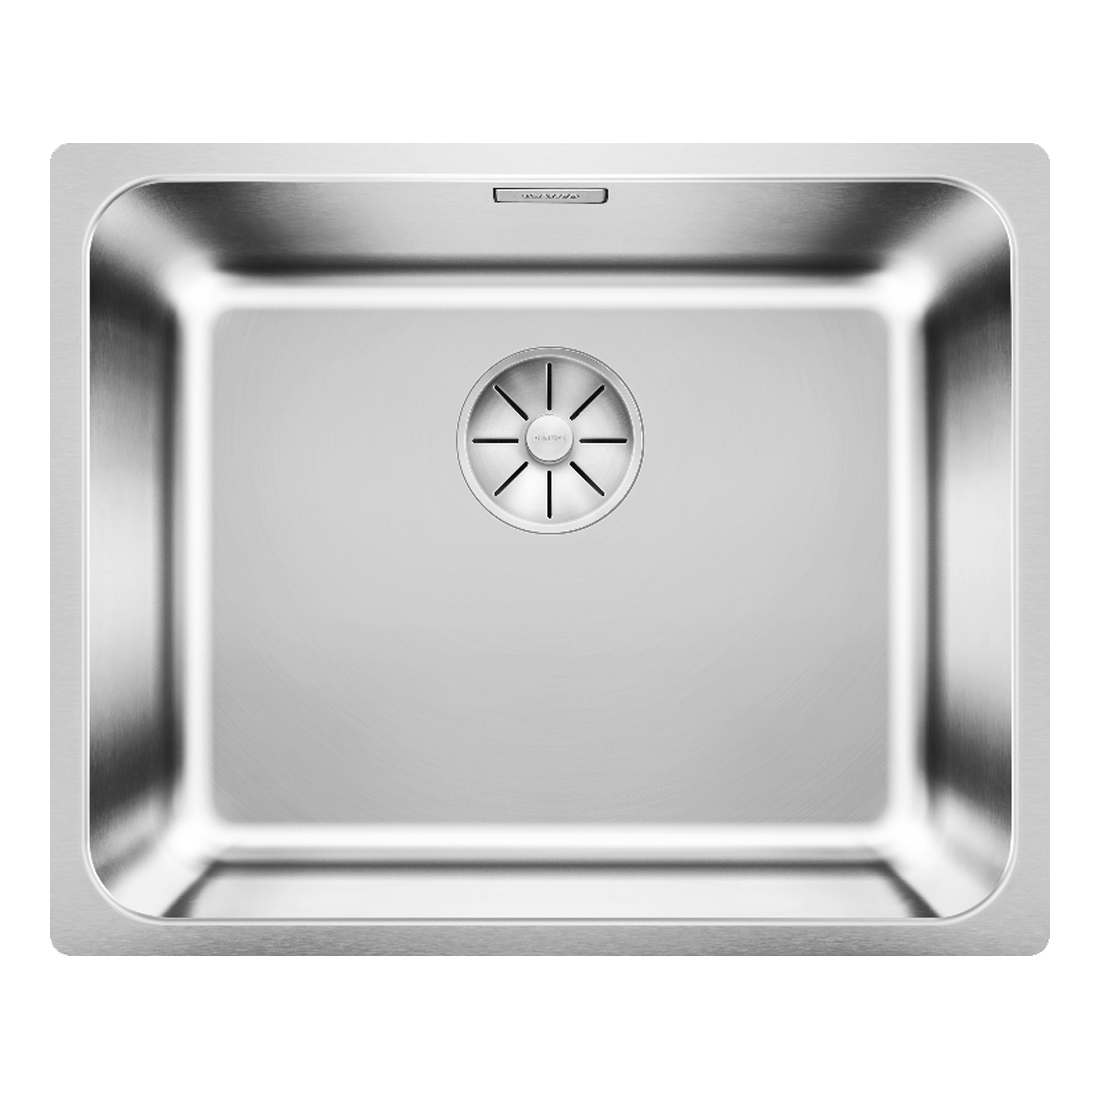 Кухонная мойка Blanco Solis 500-U полированная сталь кухонная мойка franke 122 0689 805 нержавеющая сталь